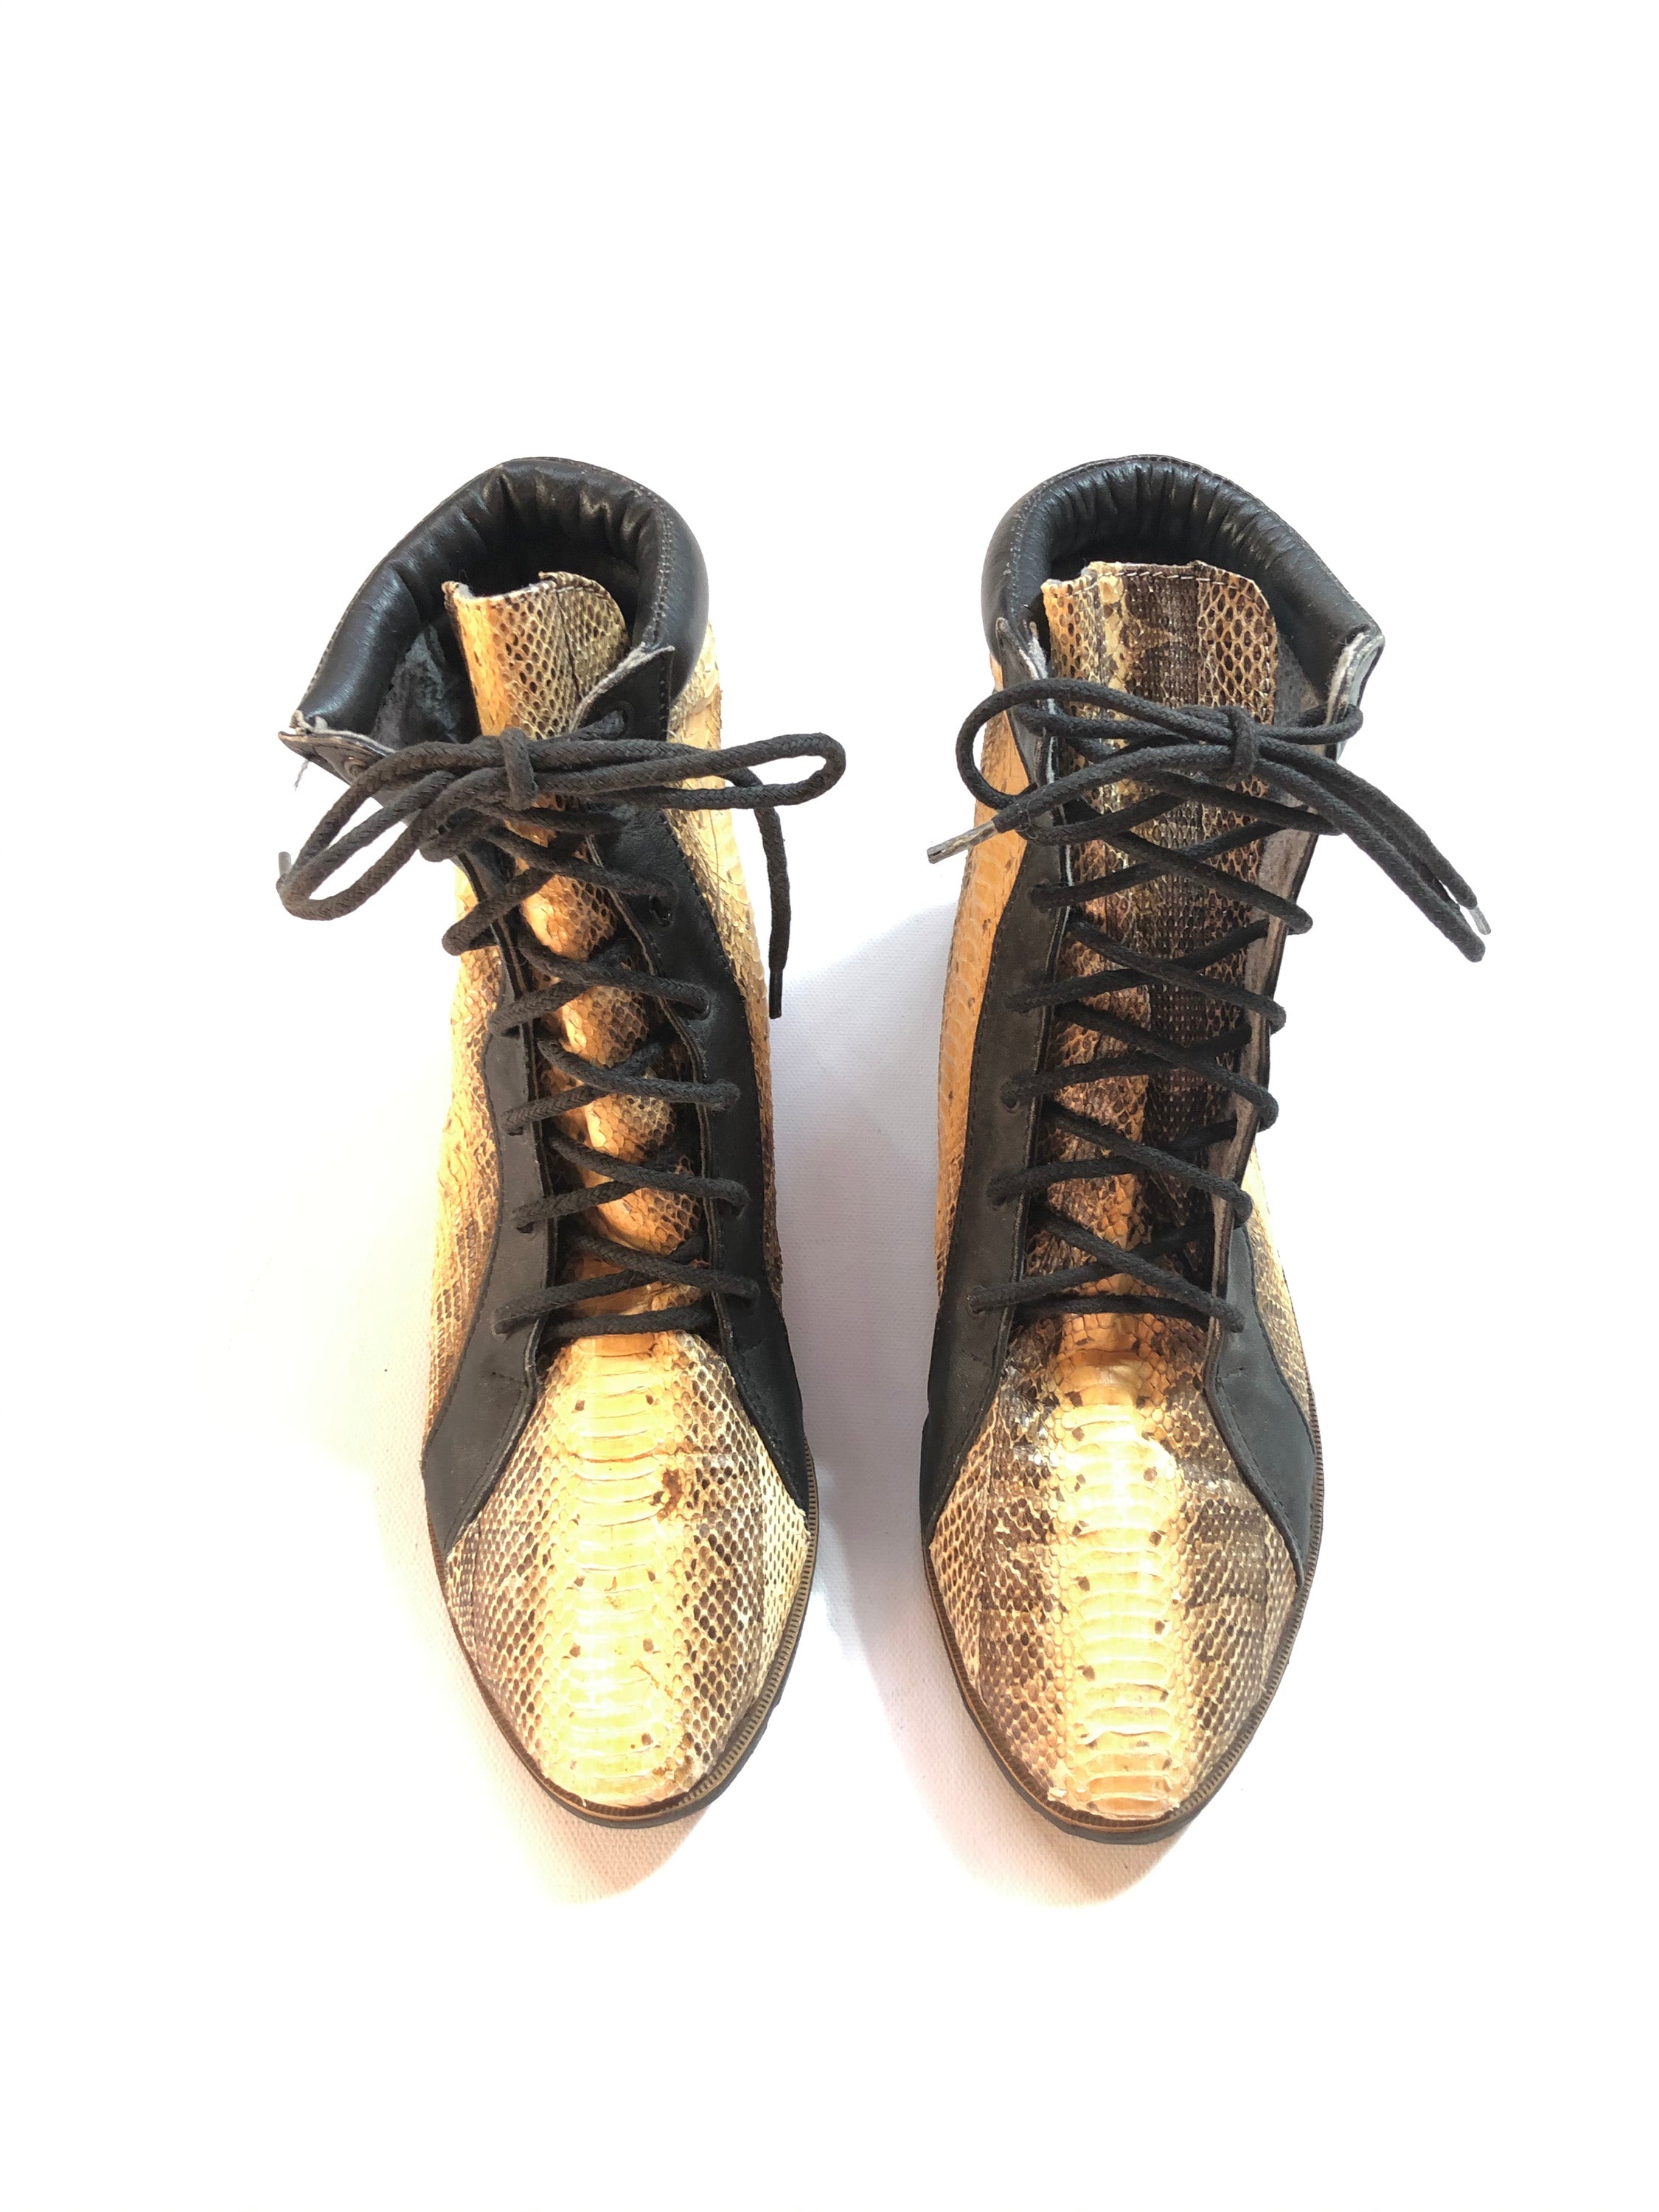 Vintage Snakeskin Sneakers